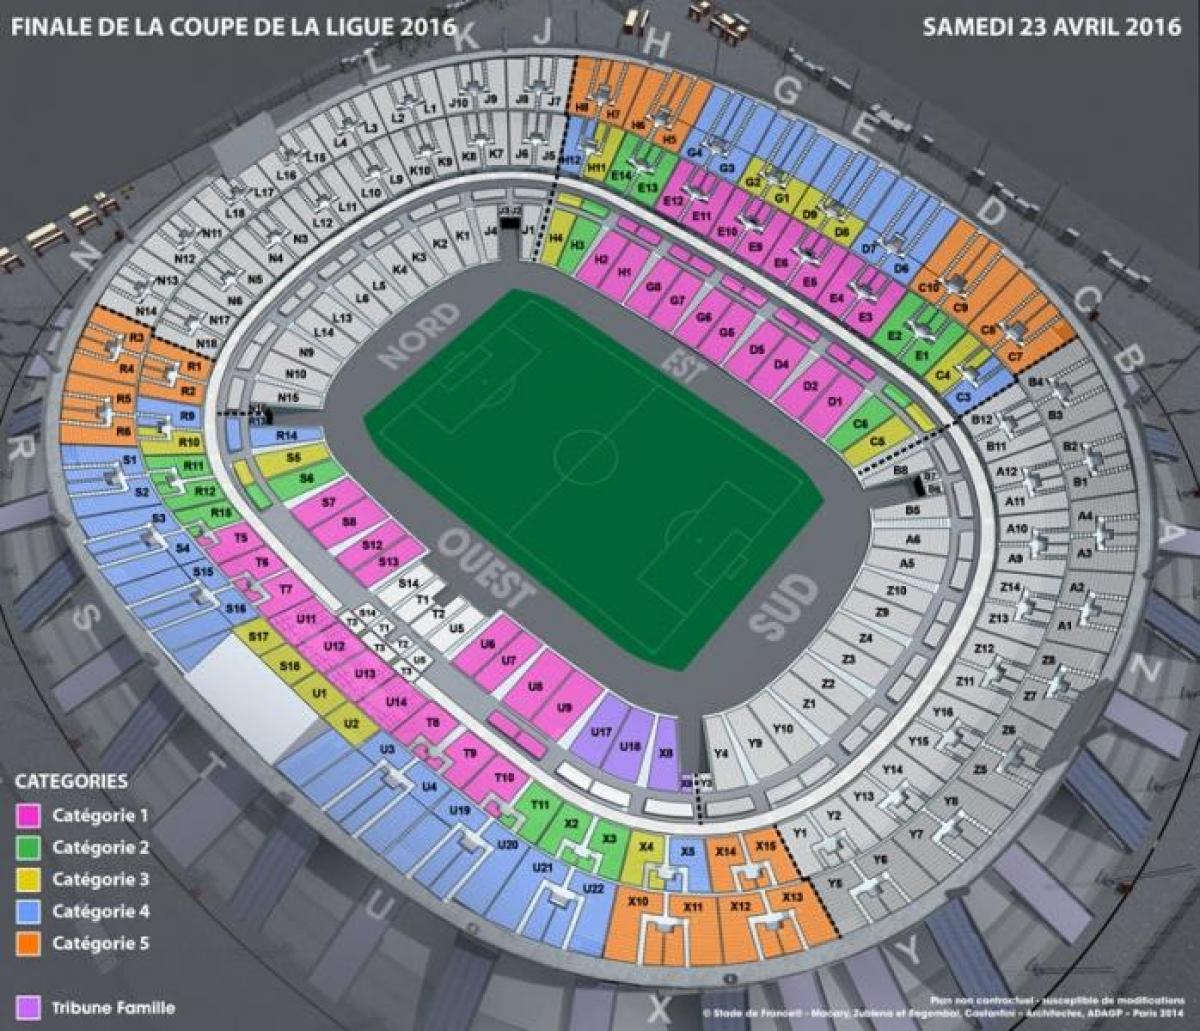 Map of Stade de France Soccer